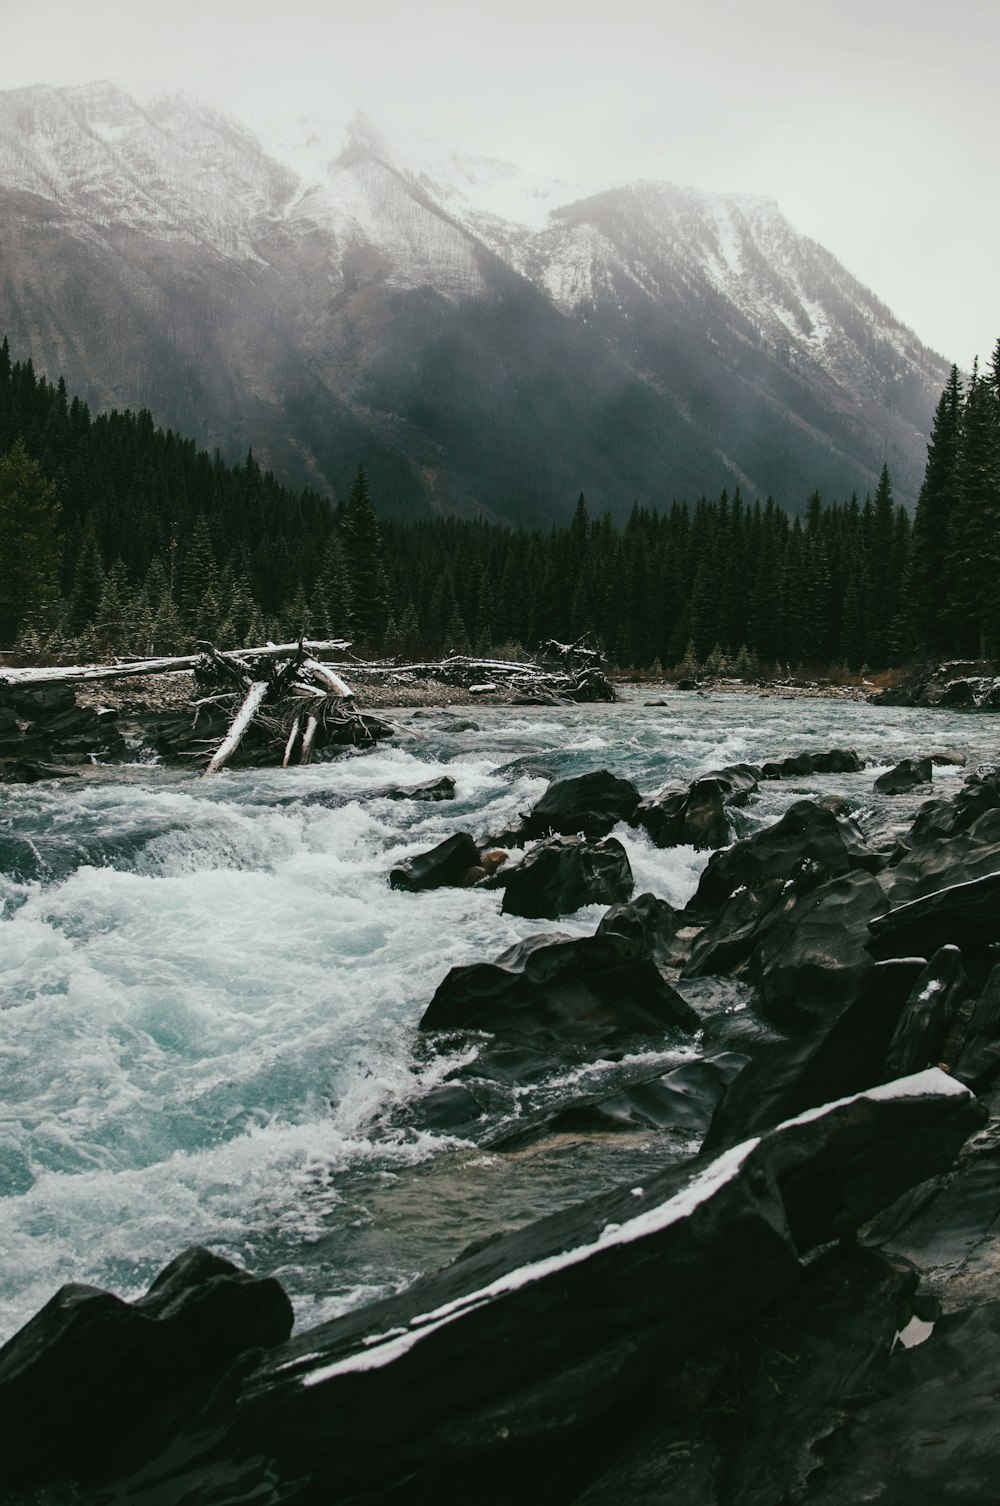 rivière avec des roches grises près de la montagne et de la forêt avec des arbres